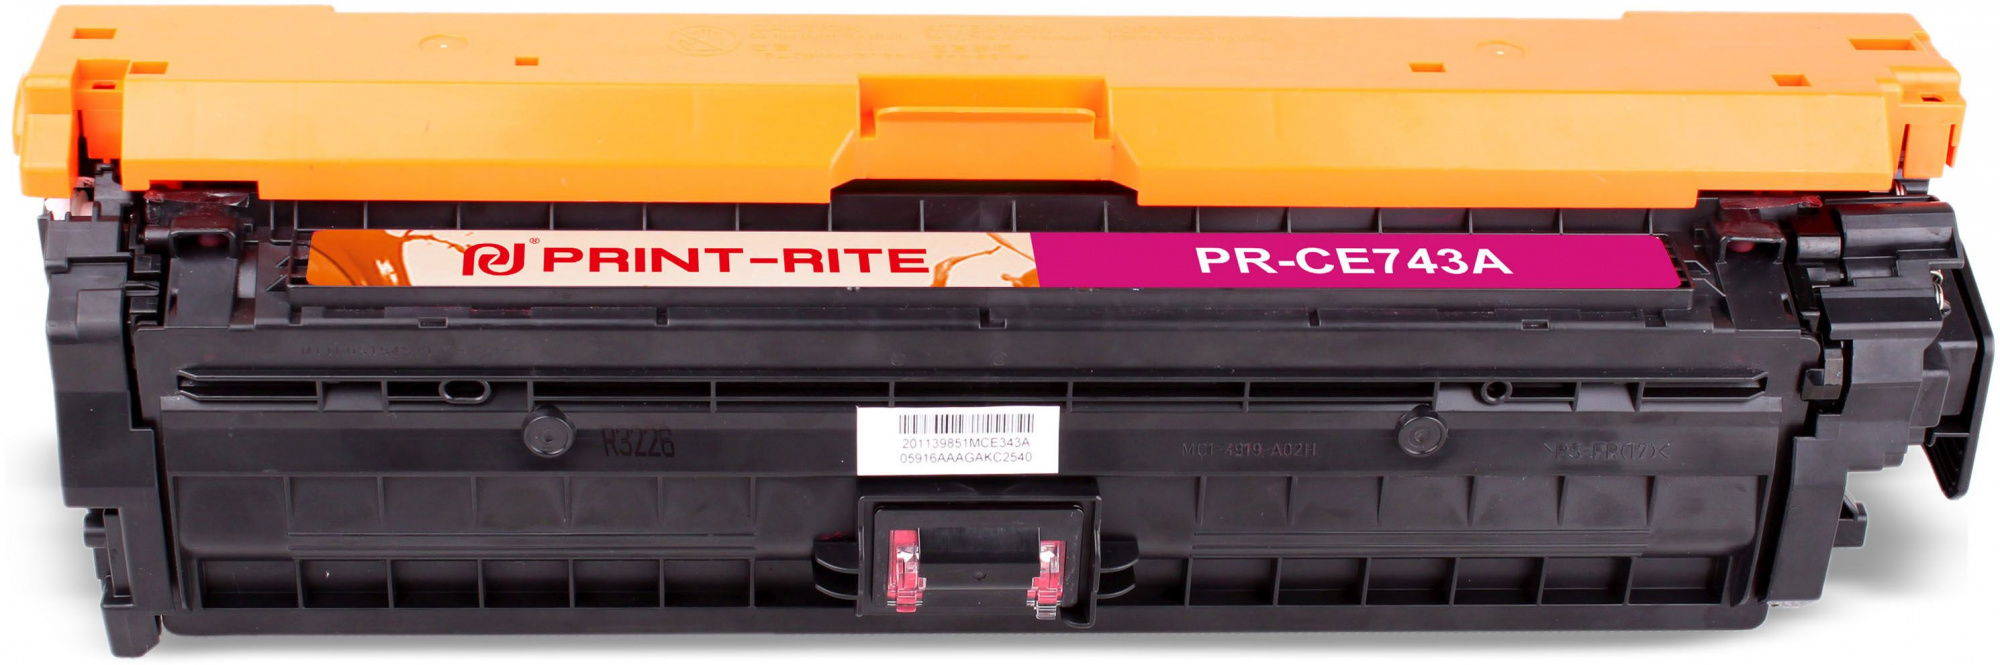   Print-Rite TFHAN8MPU1J PR-CE743A CE743A  (7300.)  HP LJ CP5220/CP5221/CP5223/CP5225